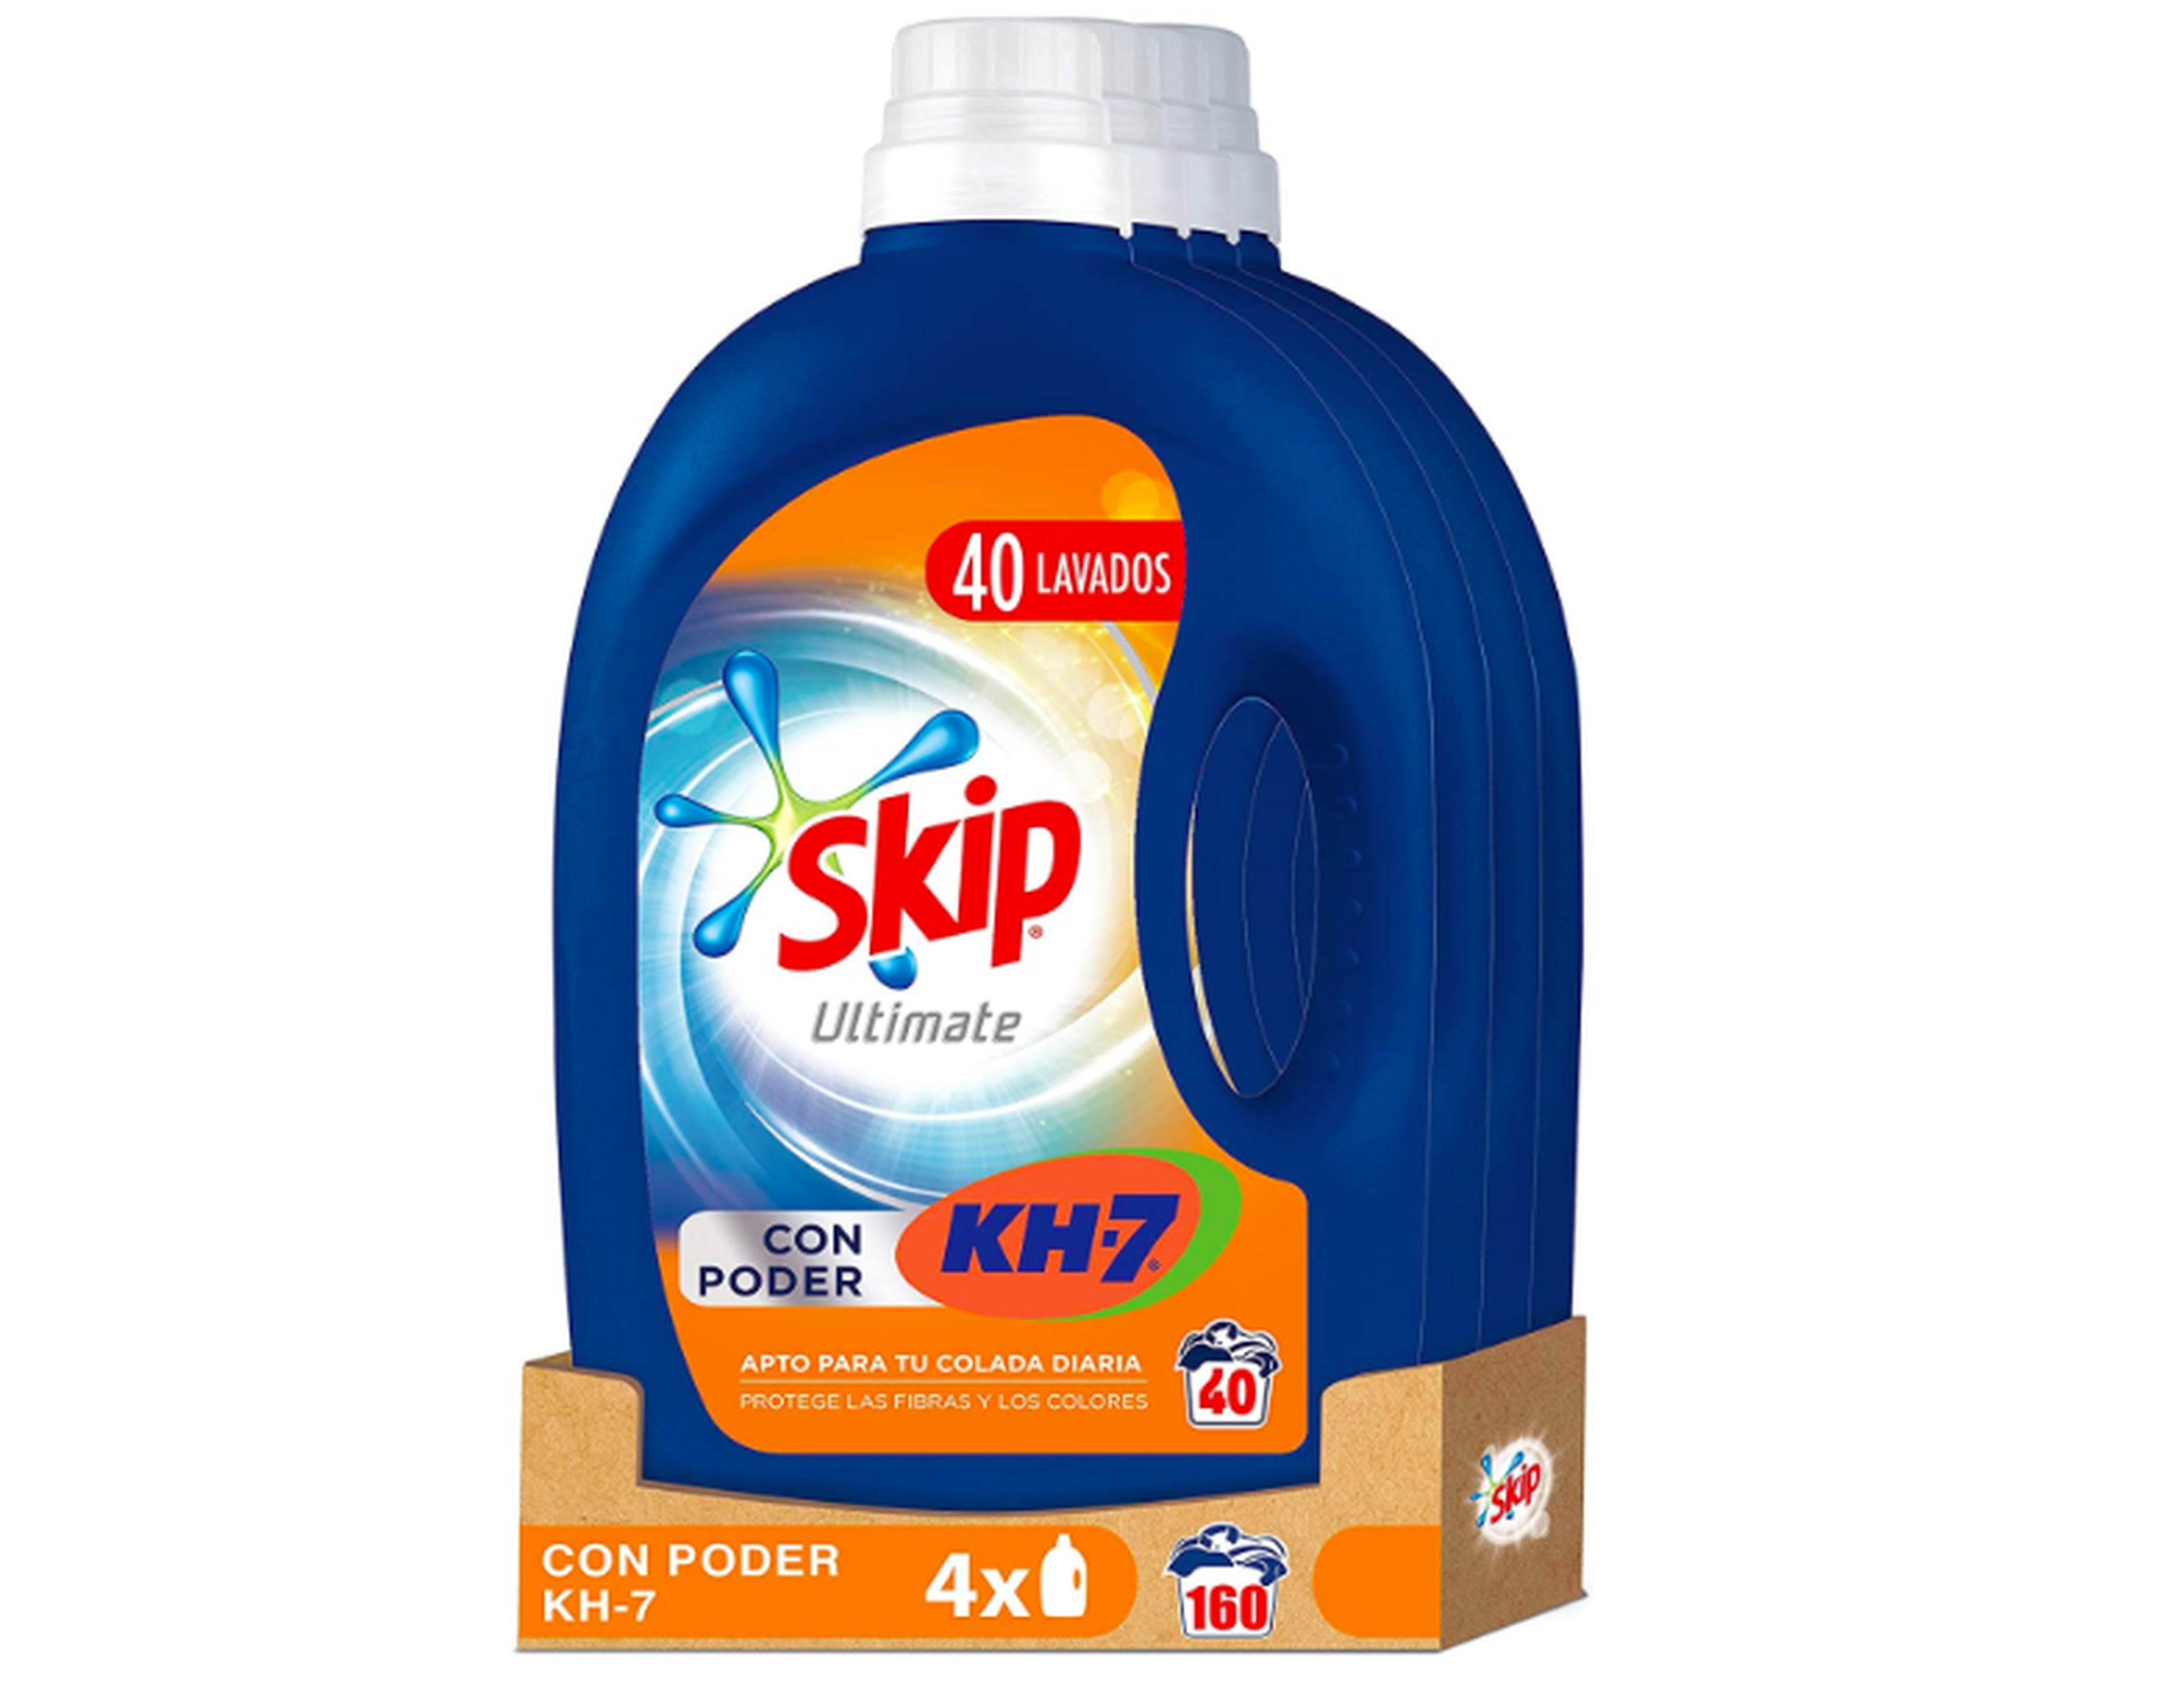 Skip Ultimate Poder KH7 - Detergente líquido para 40 lavados, 2 l - paquete de 4, total 160 lavados, 8 l.